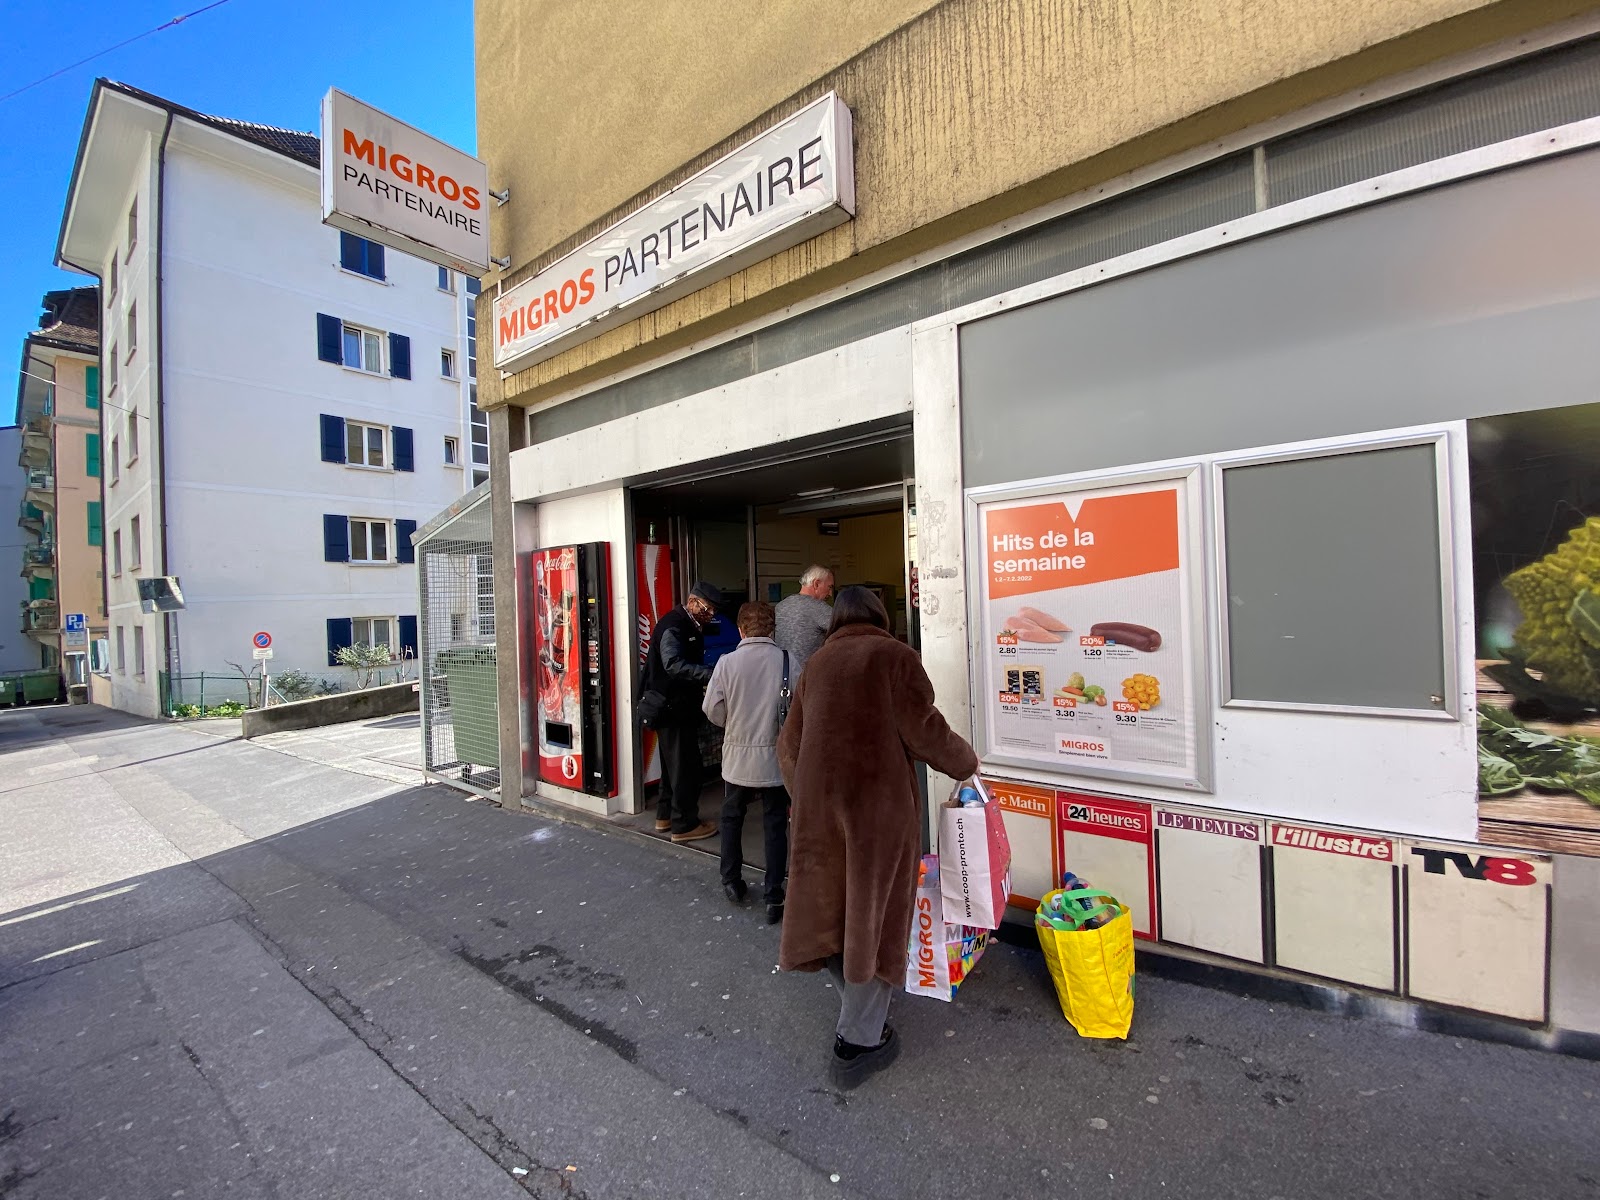 Migros Lausanne - Maupas Migros Partenaire, Rue du Maupas, Lausanne, Switzerland (null)